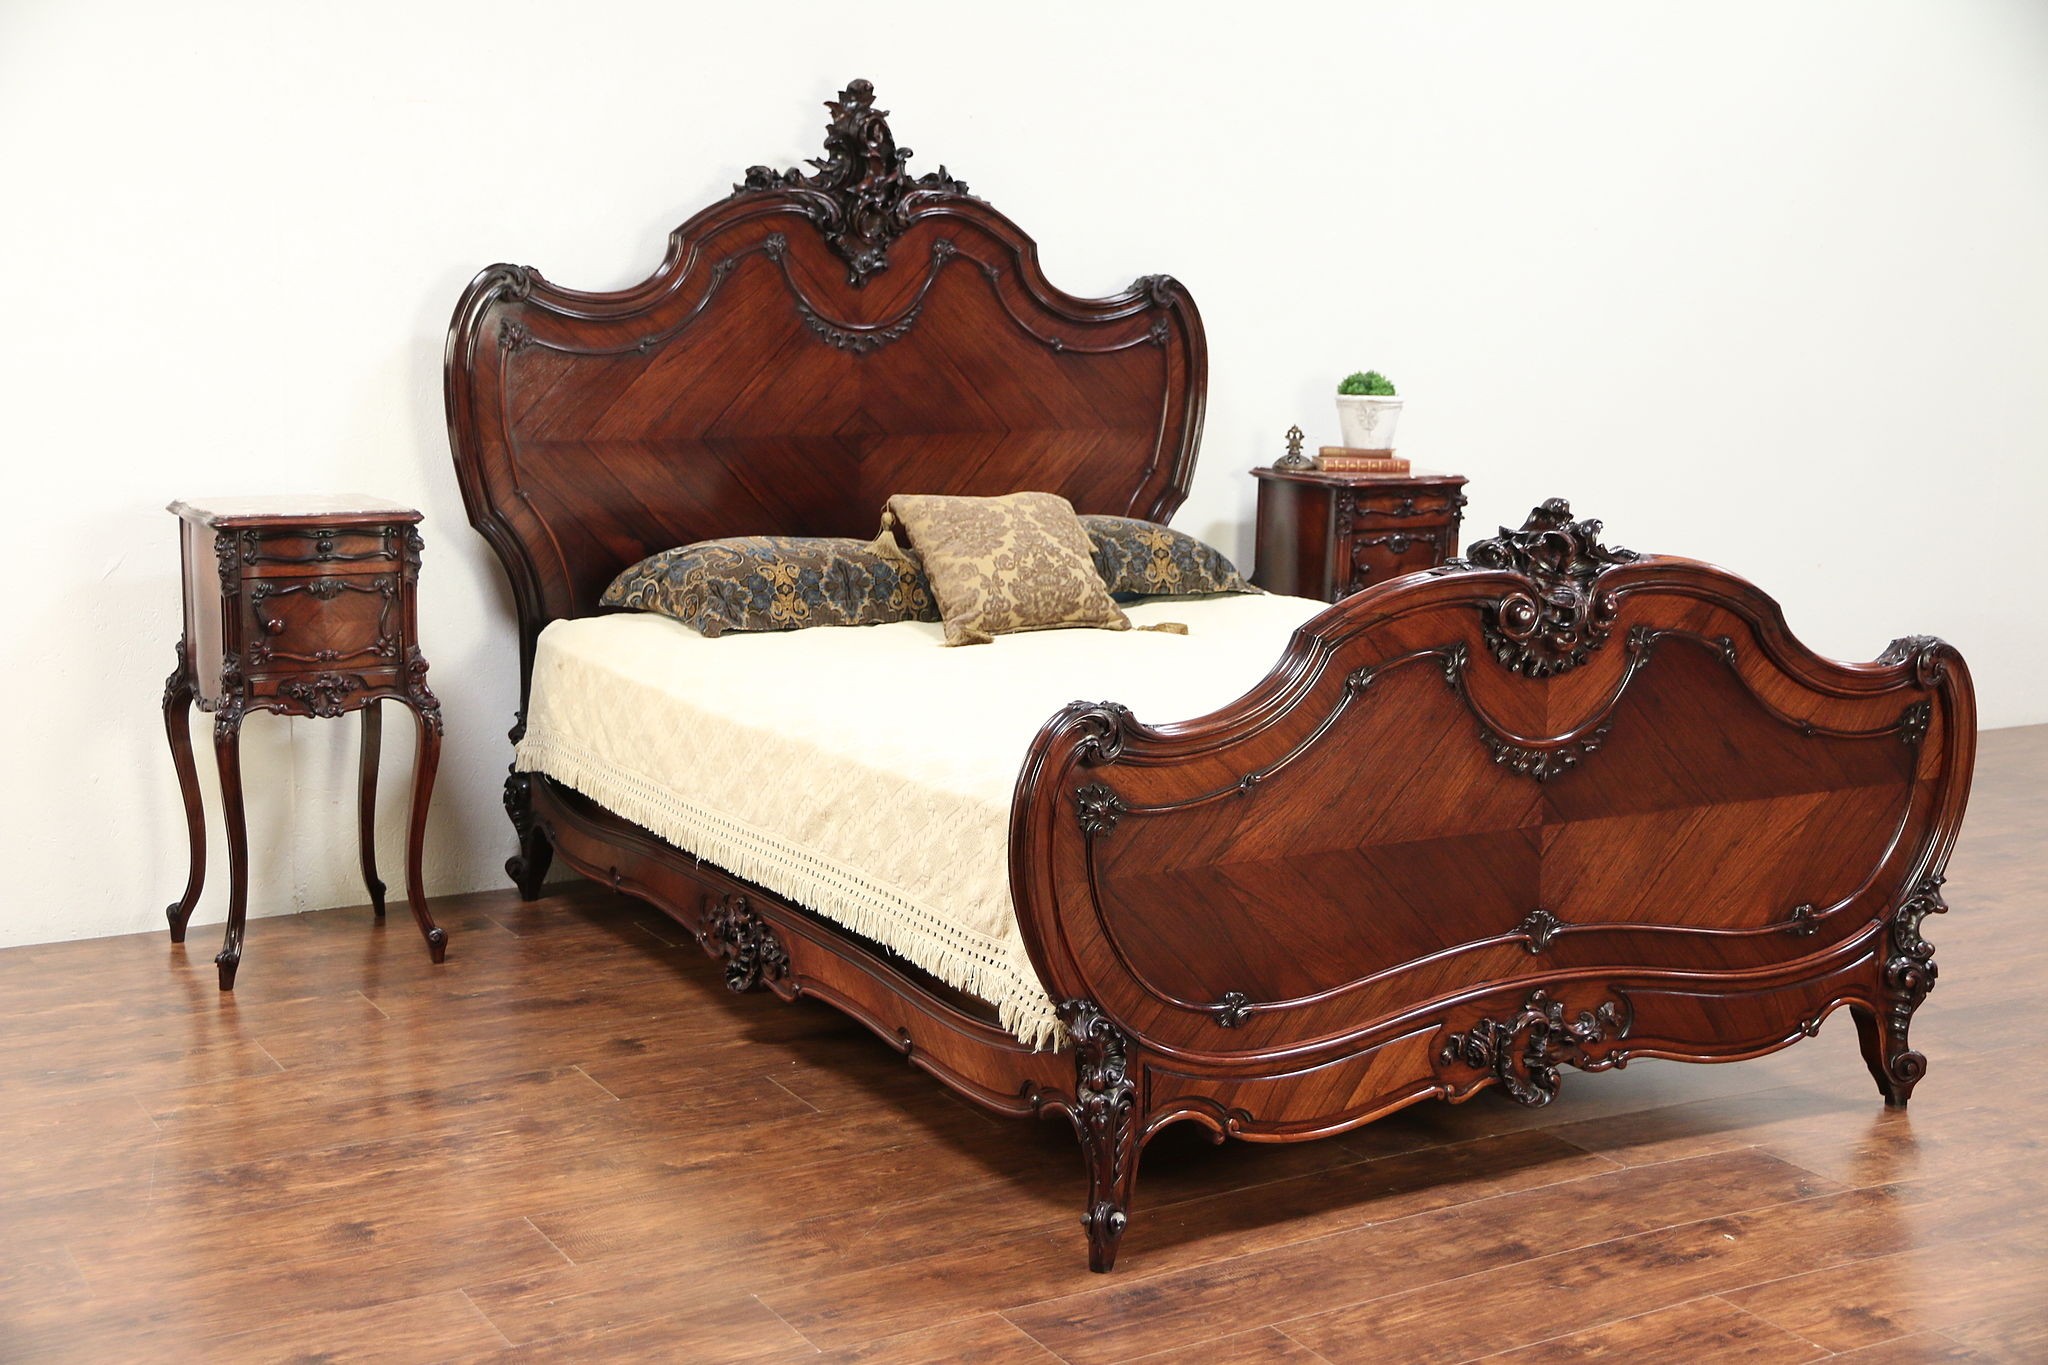 rosewood bedroom furniture dubai